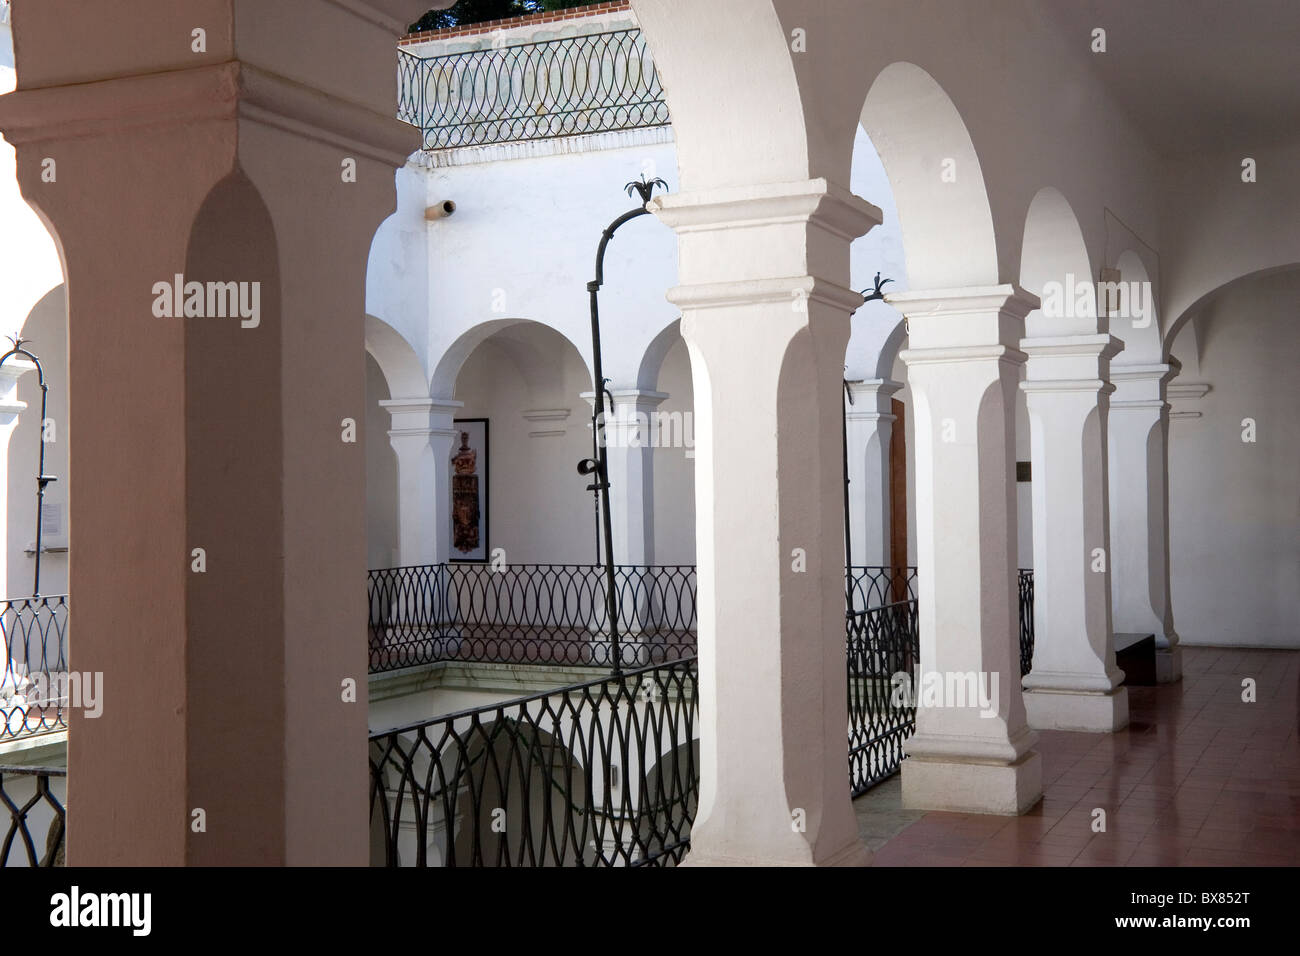 Detalles de la arquitectura colonial española, el interior de edificios, en Oaxaca, México Foto de stock